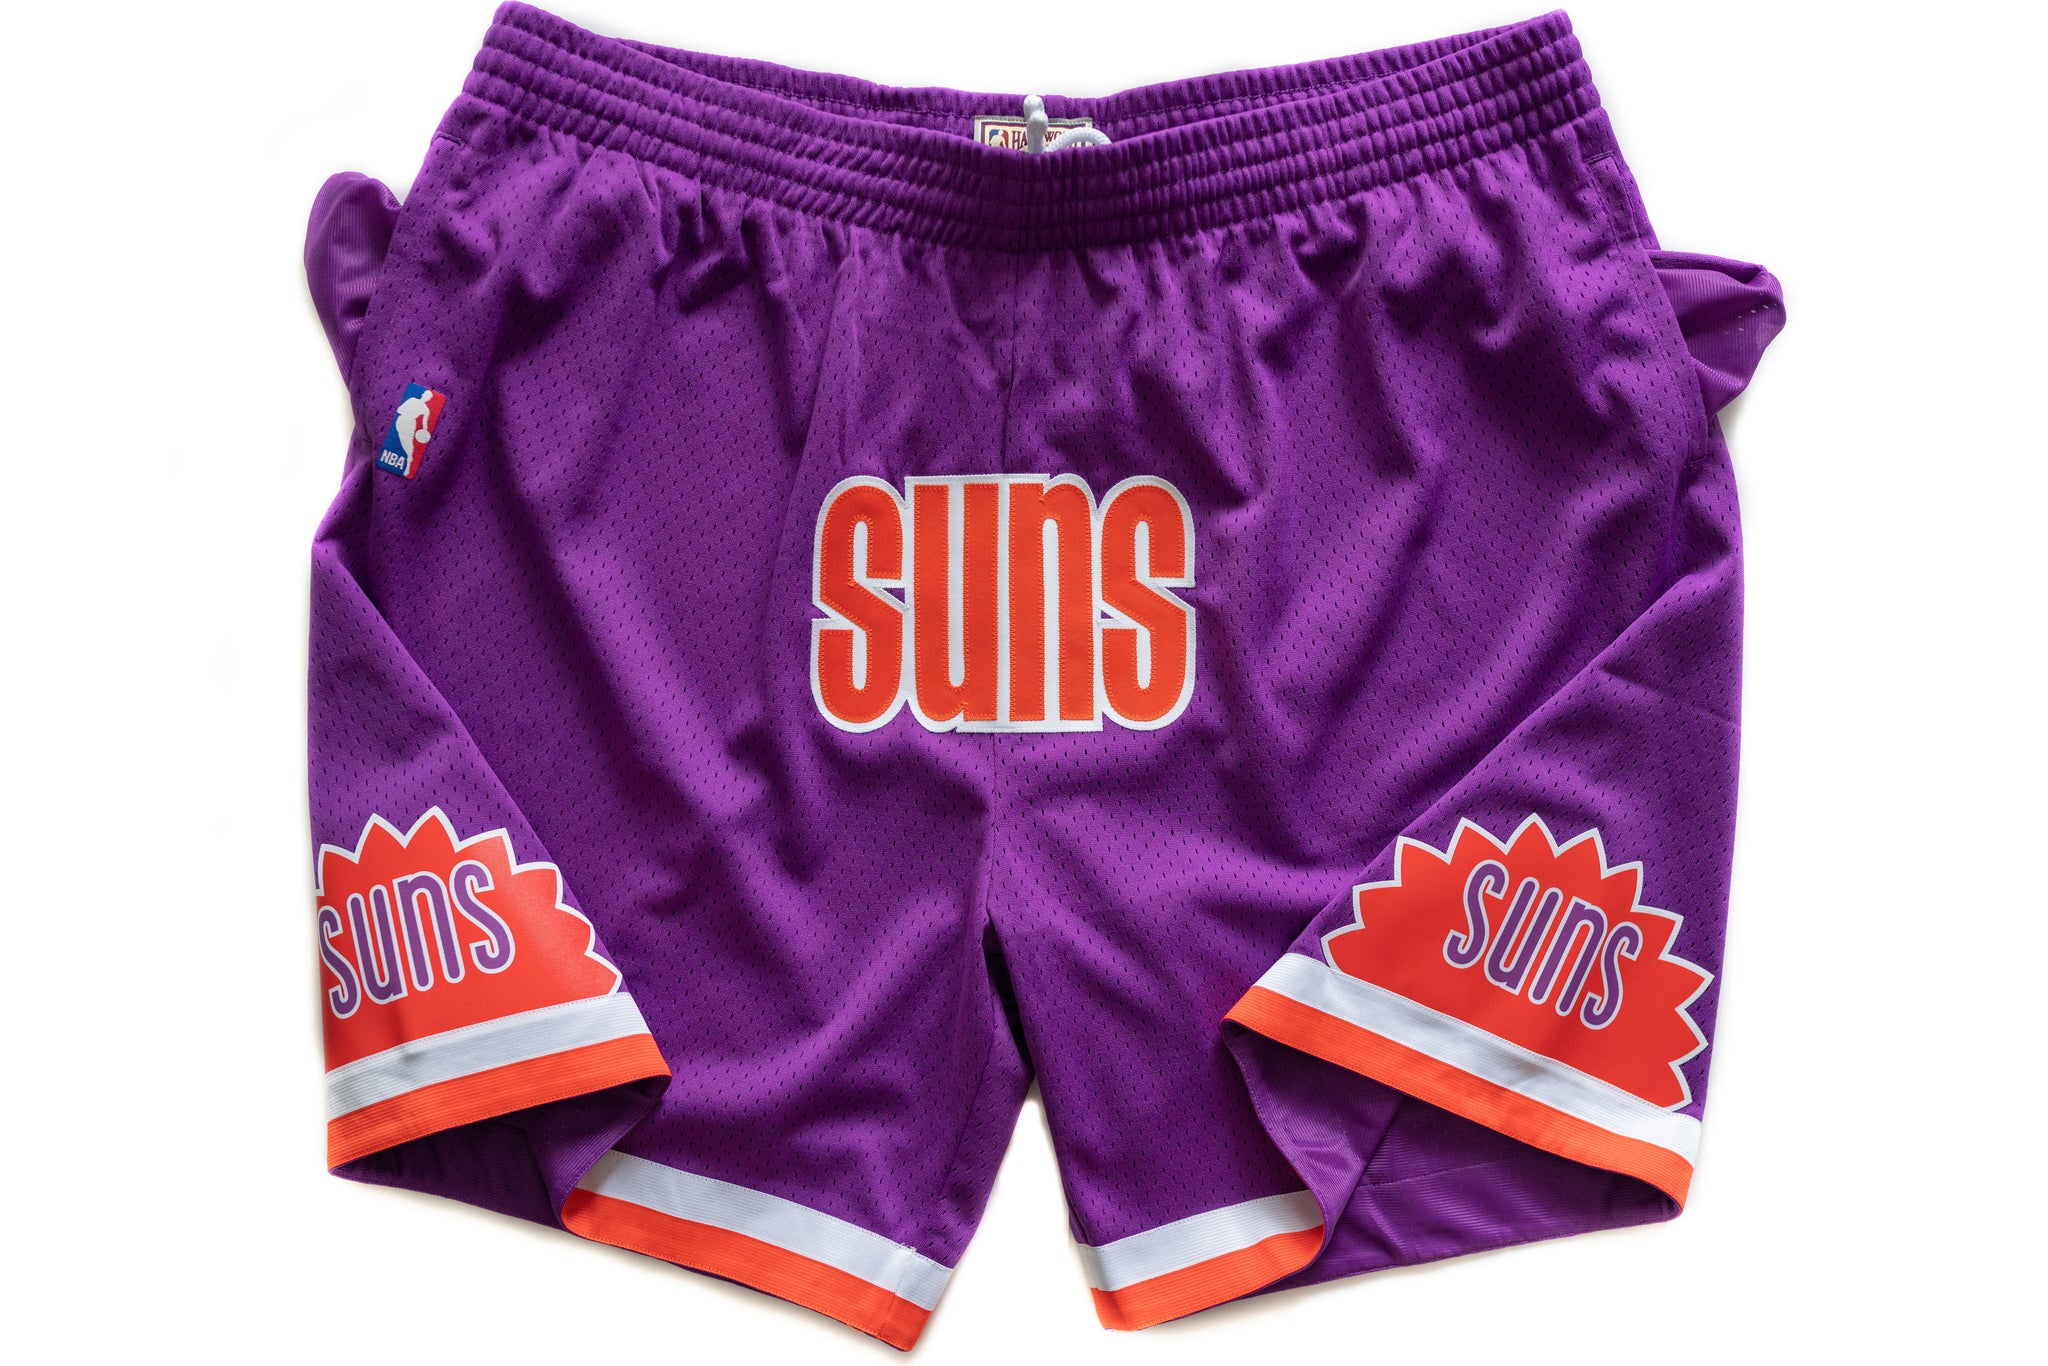 Mitchell & Ness Phoenix Suns 1991-1992 "SUNS" Purple Swingman Shorts